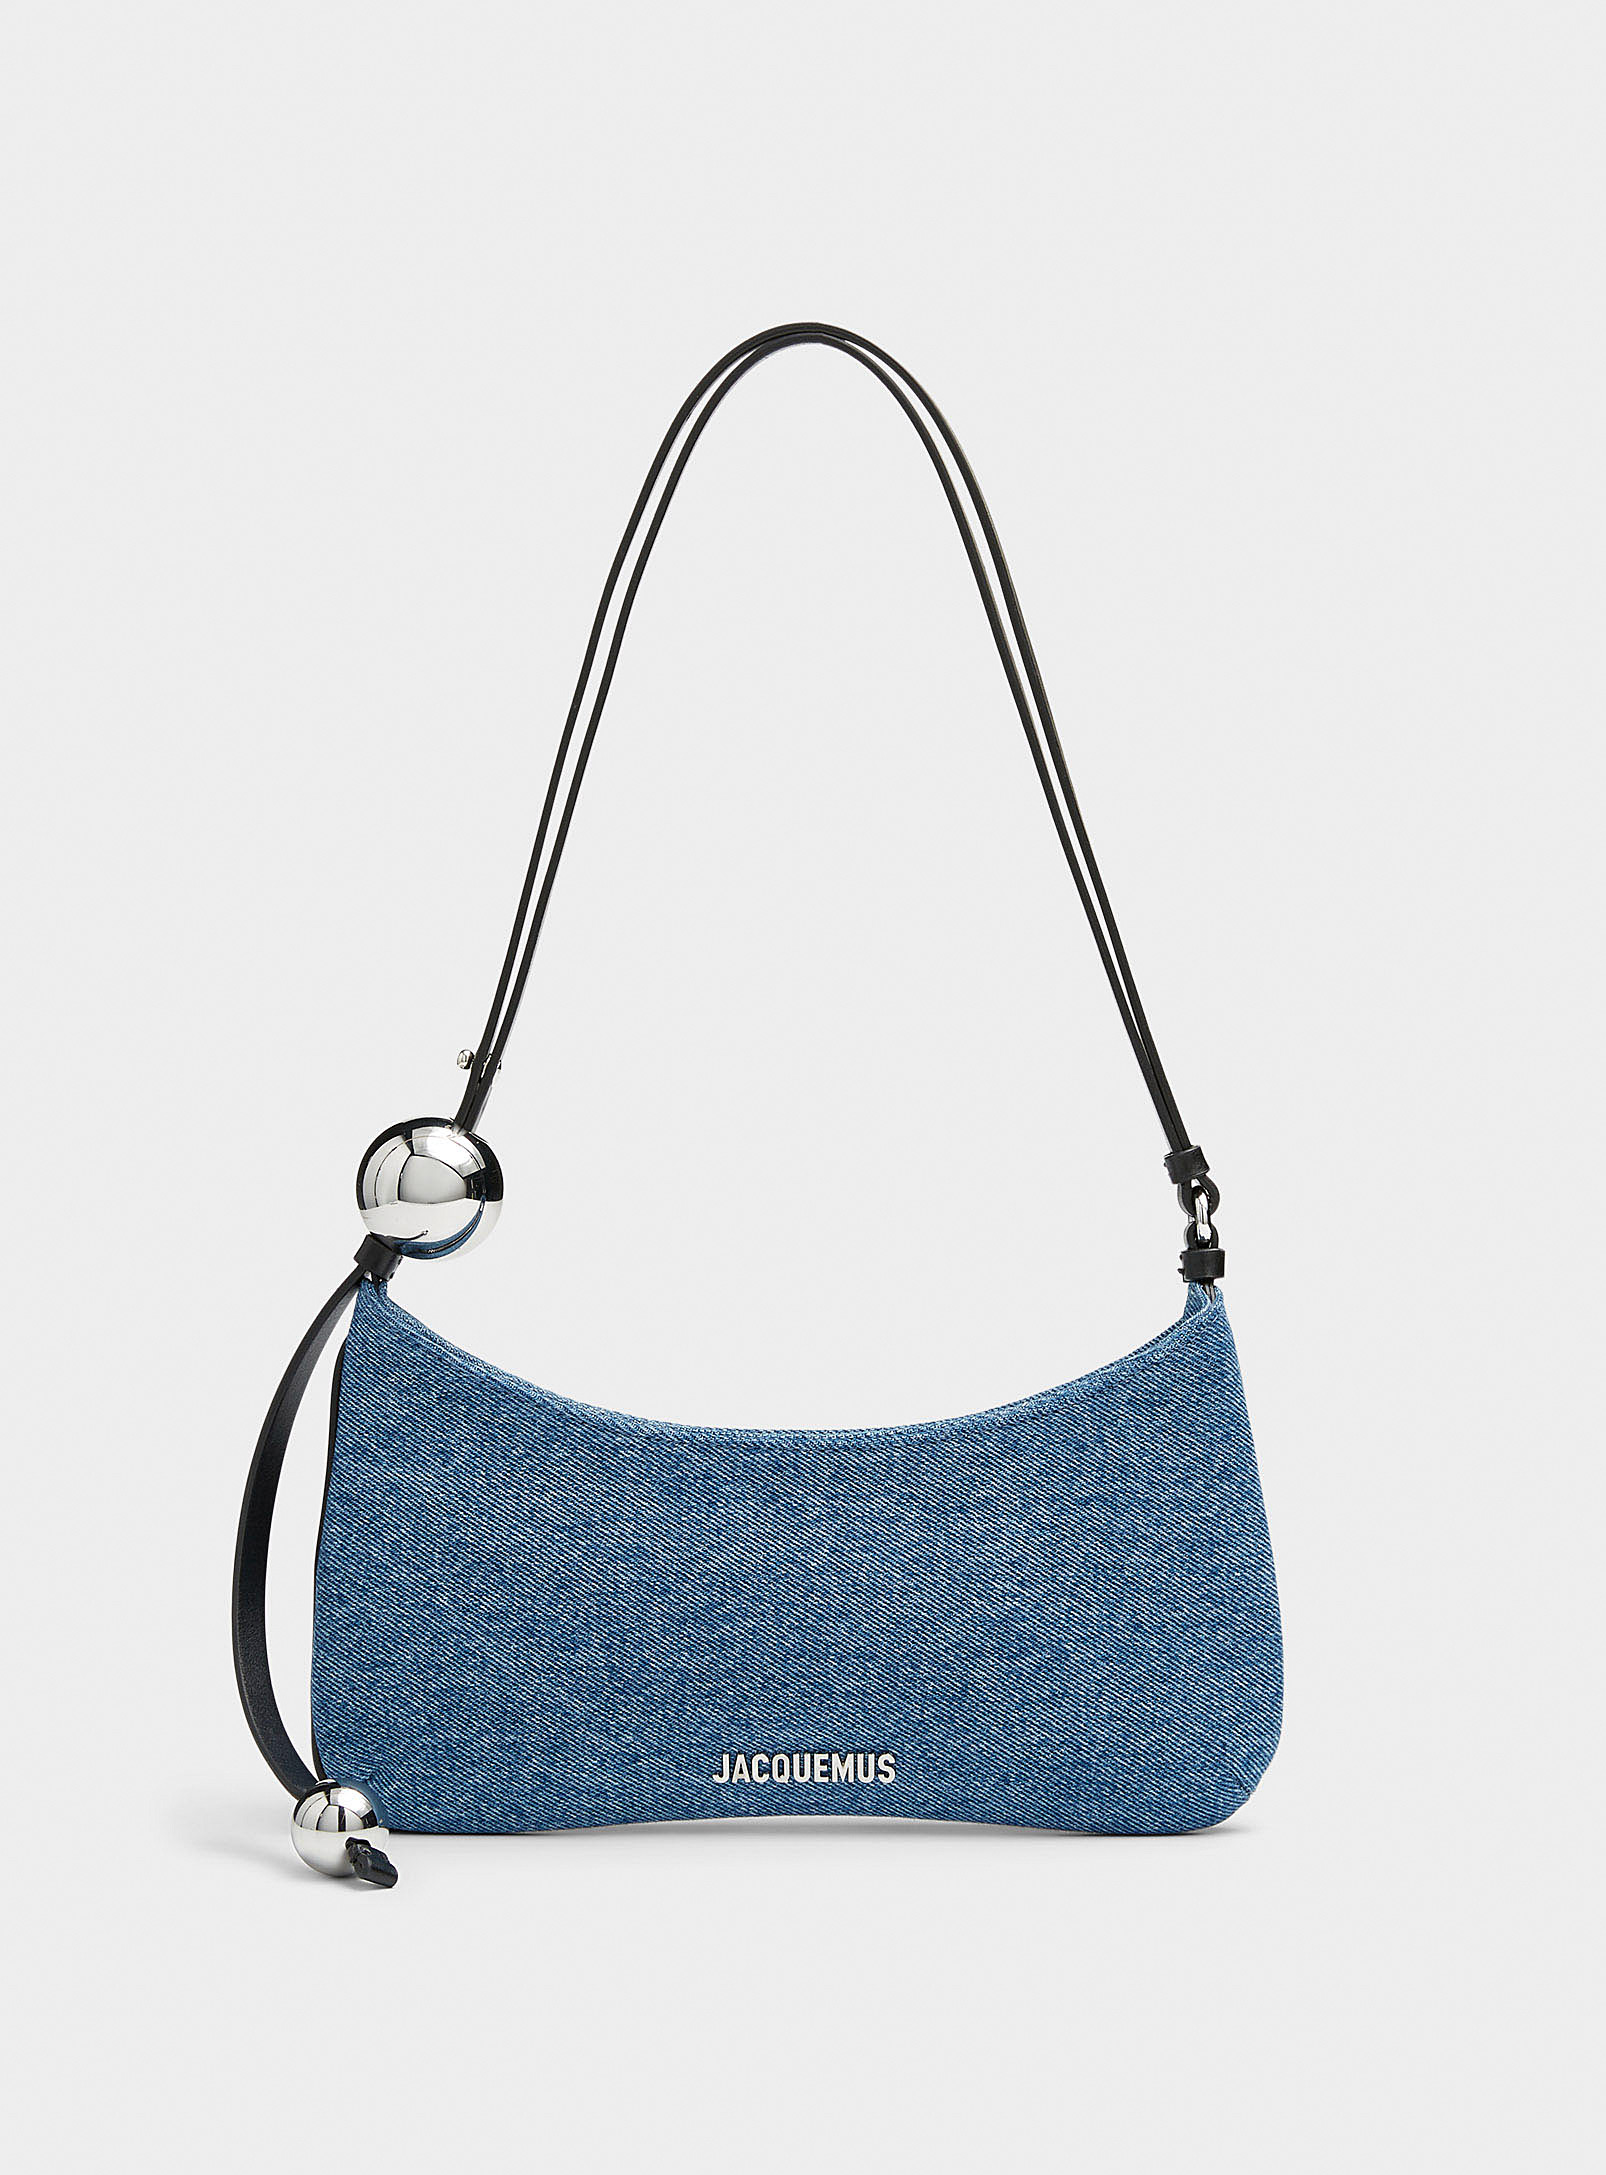 Jacquemus - Women's Le Bisou Perle denim bag